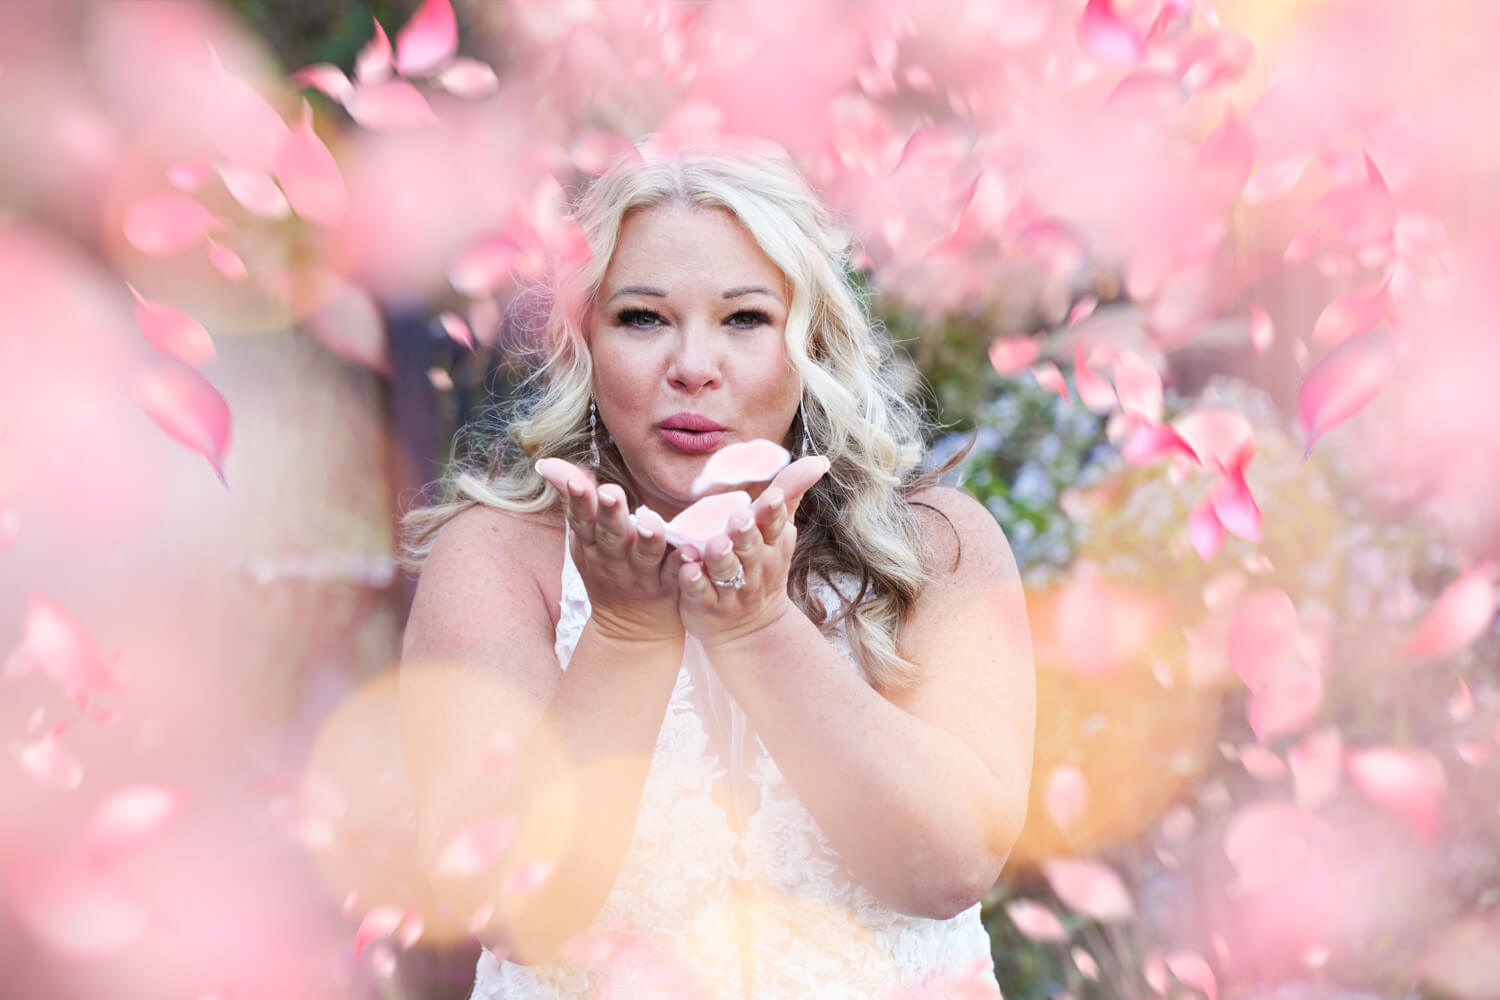 Bride blowing pink petals